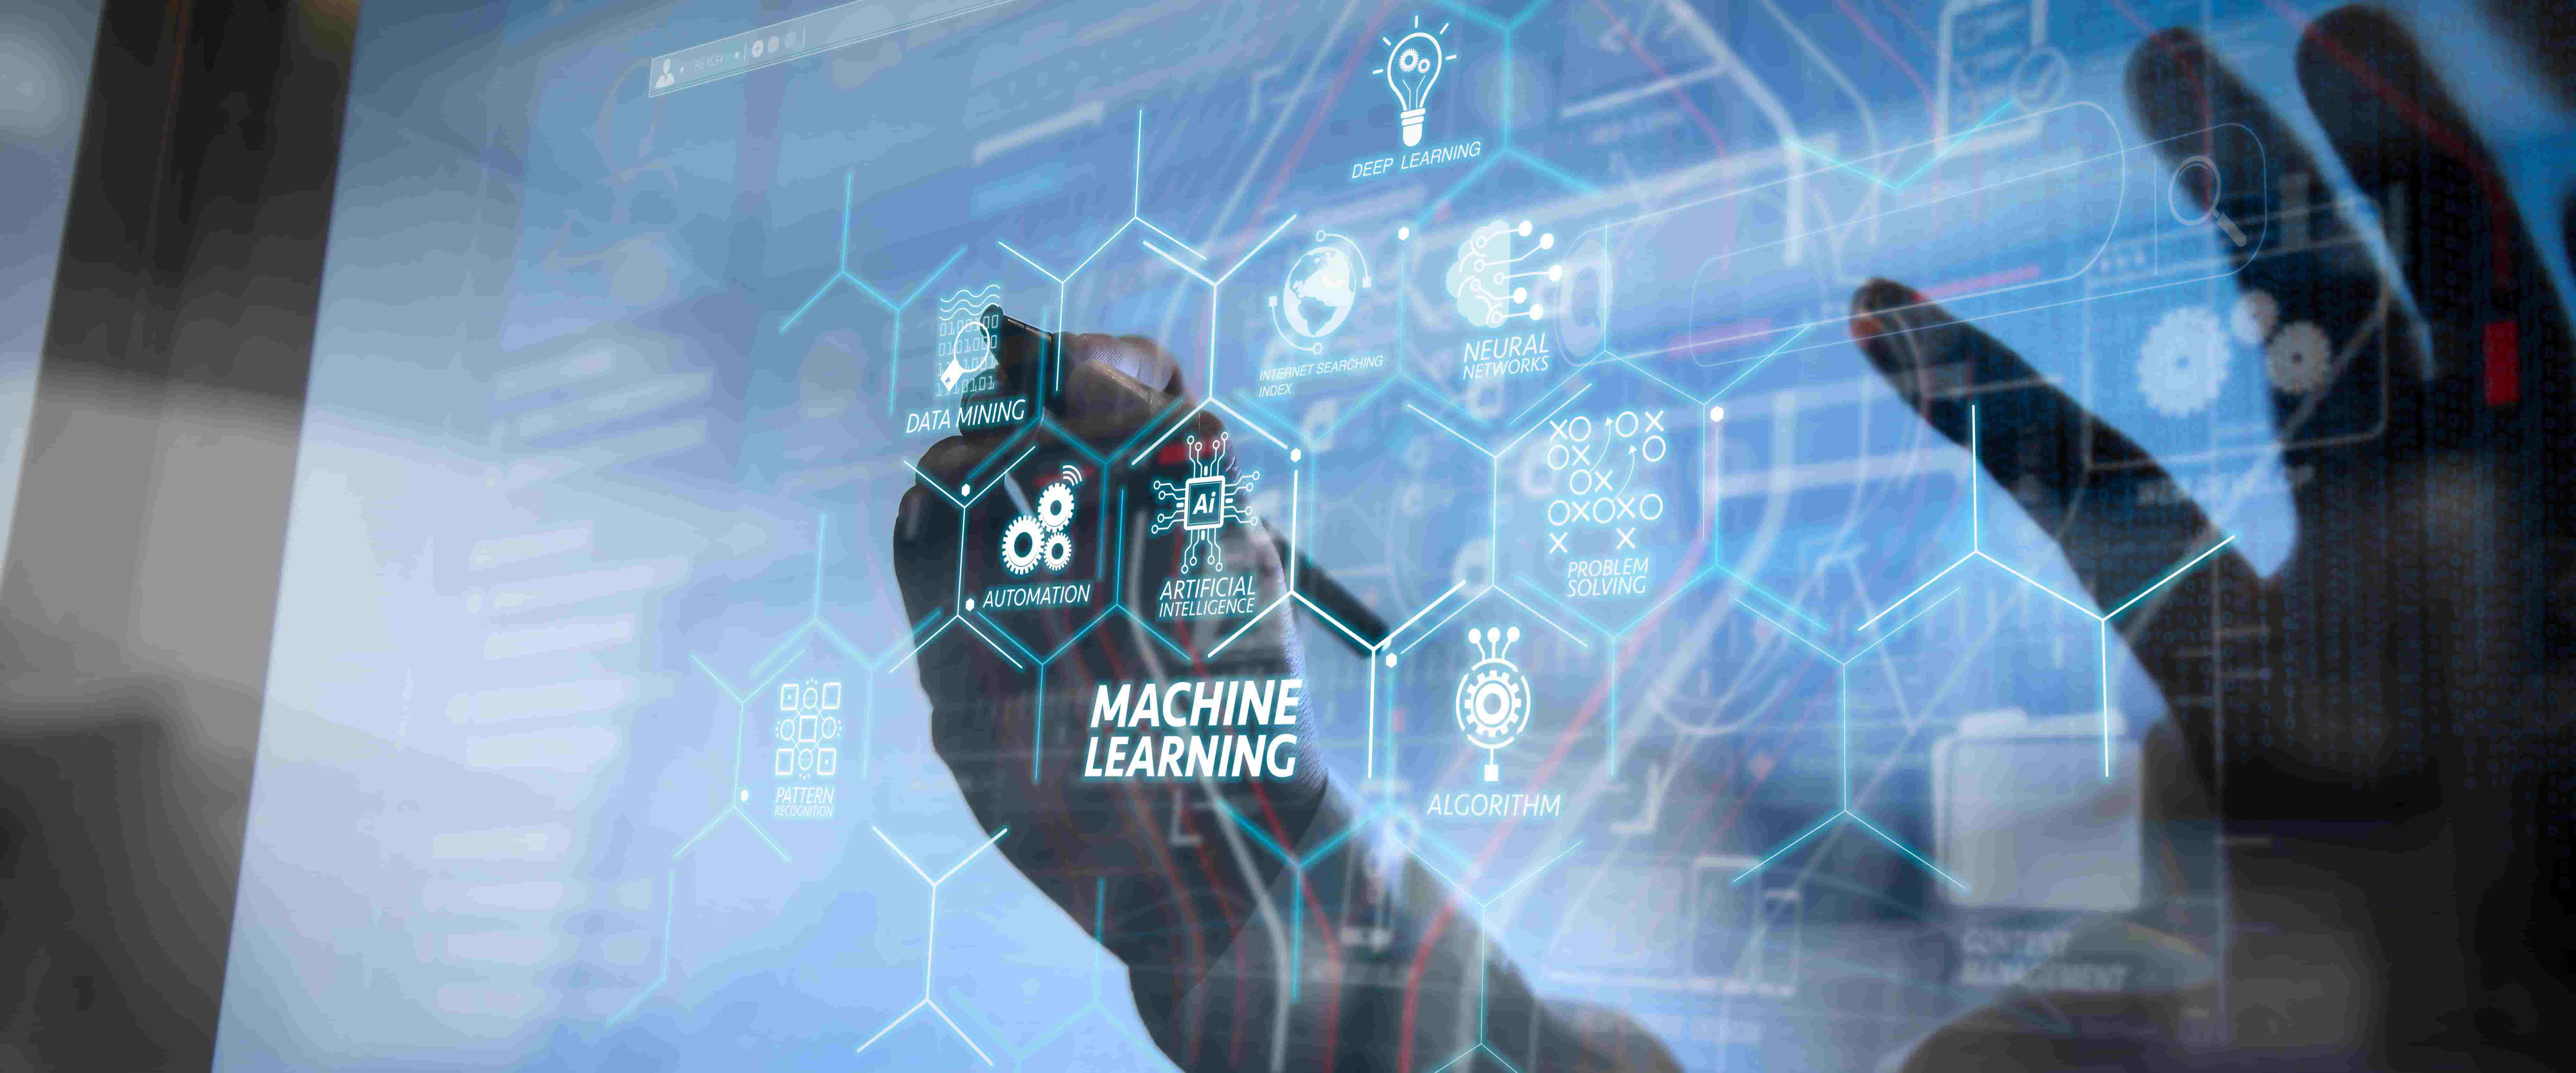 图片展示了一只手在触摸充满术语的透明屏幕，包含“Machine Learning”和其他与人工智能相关的词汇。